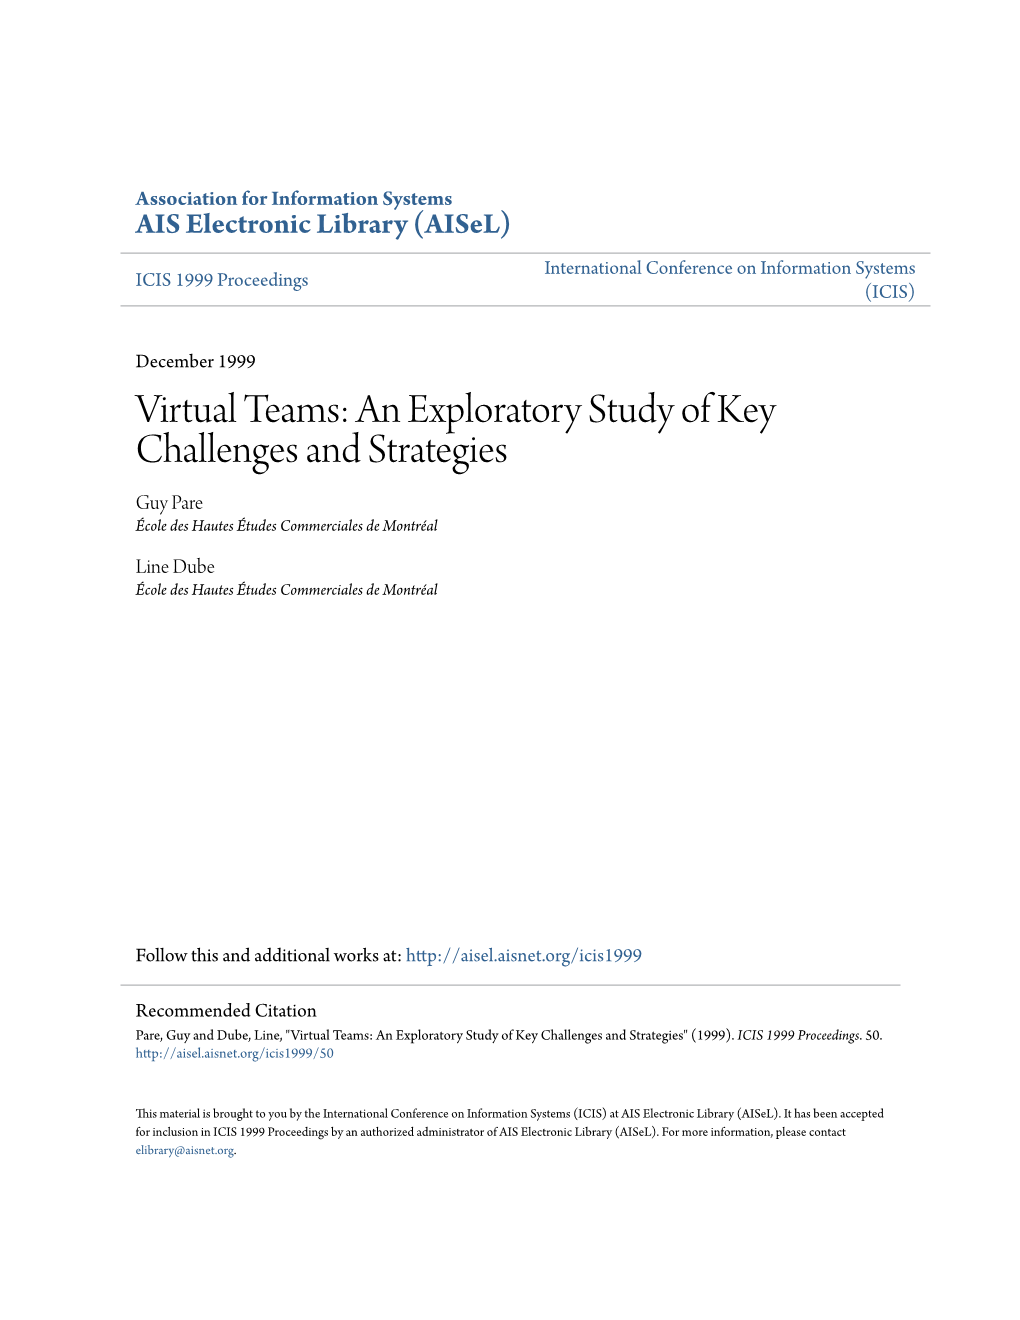 Virtual Teams: an Exploratory Study of Key Challenges and Strategies Guy Pare École Des Hautes Études Commerciales De Montréal